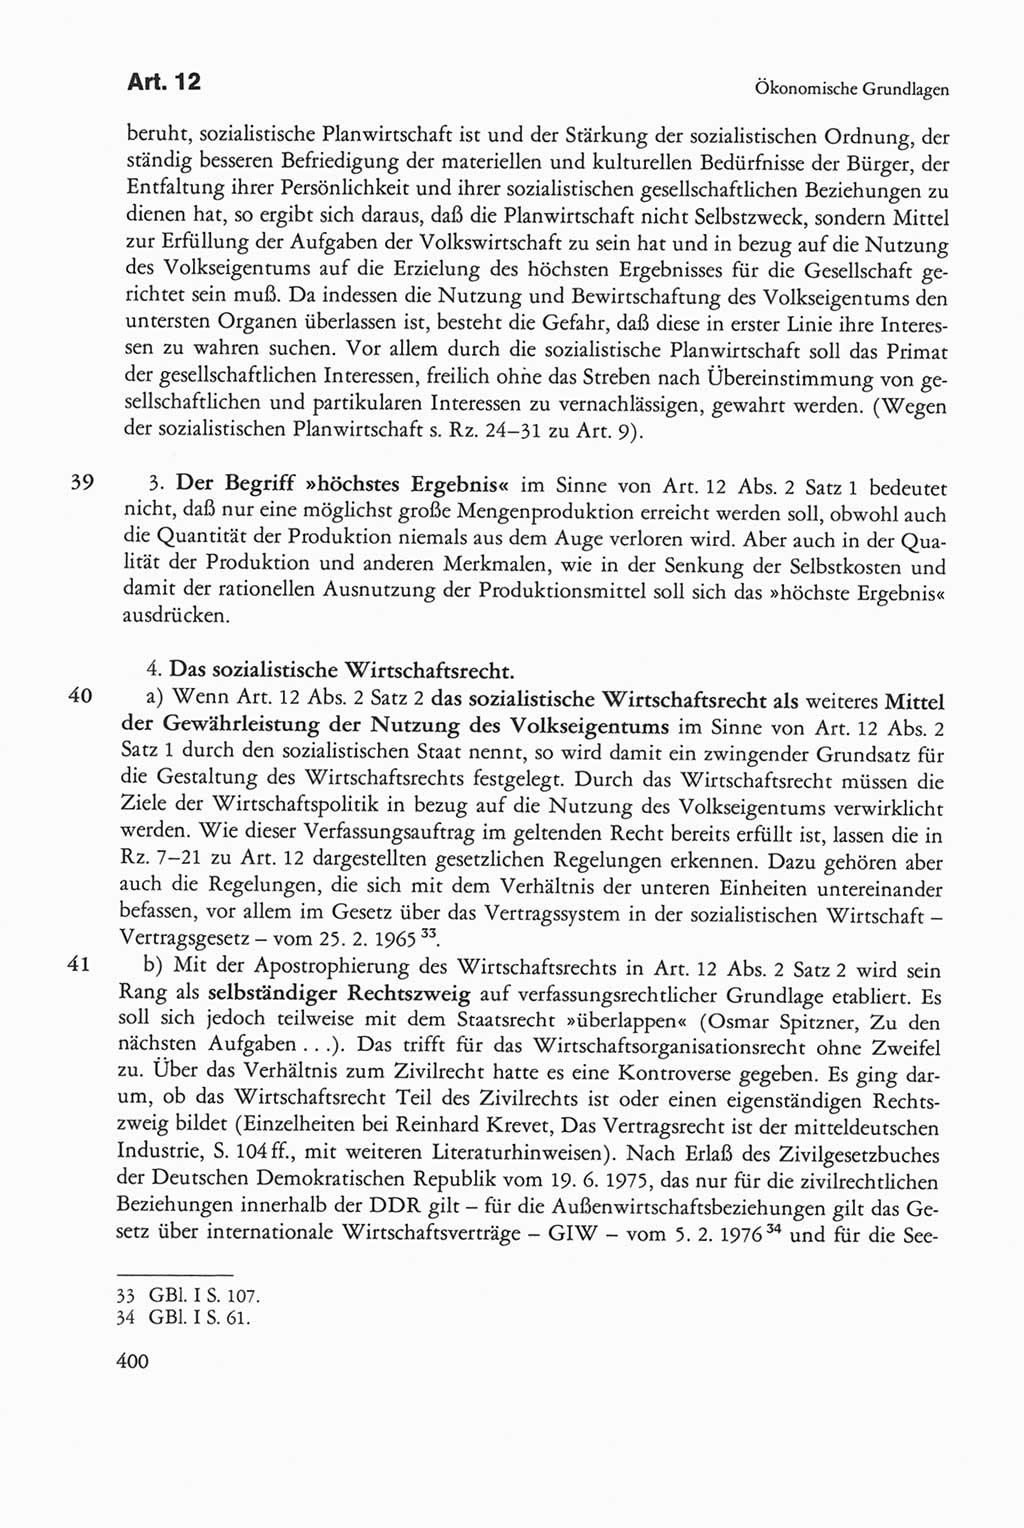 Die sozialistische Verfassung der Deutschen Demokratischen Republik (DDR), Kommentar mit einem Nachtrag 1997, Seite 400 (Soz. Verf. DDR Komm. Nachtr. 1997, S. 400)